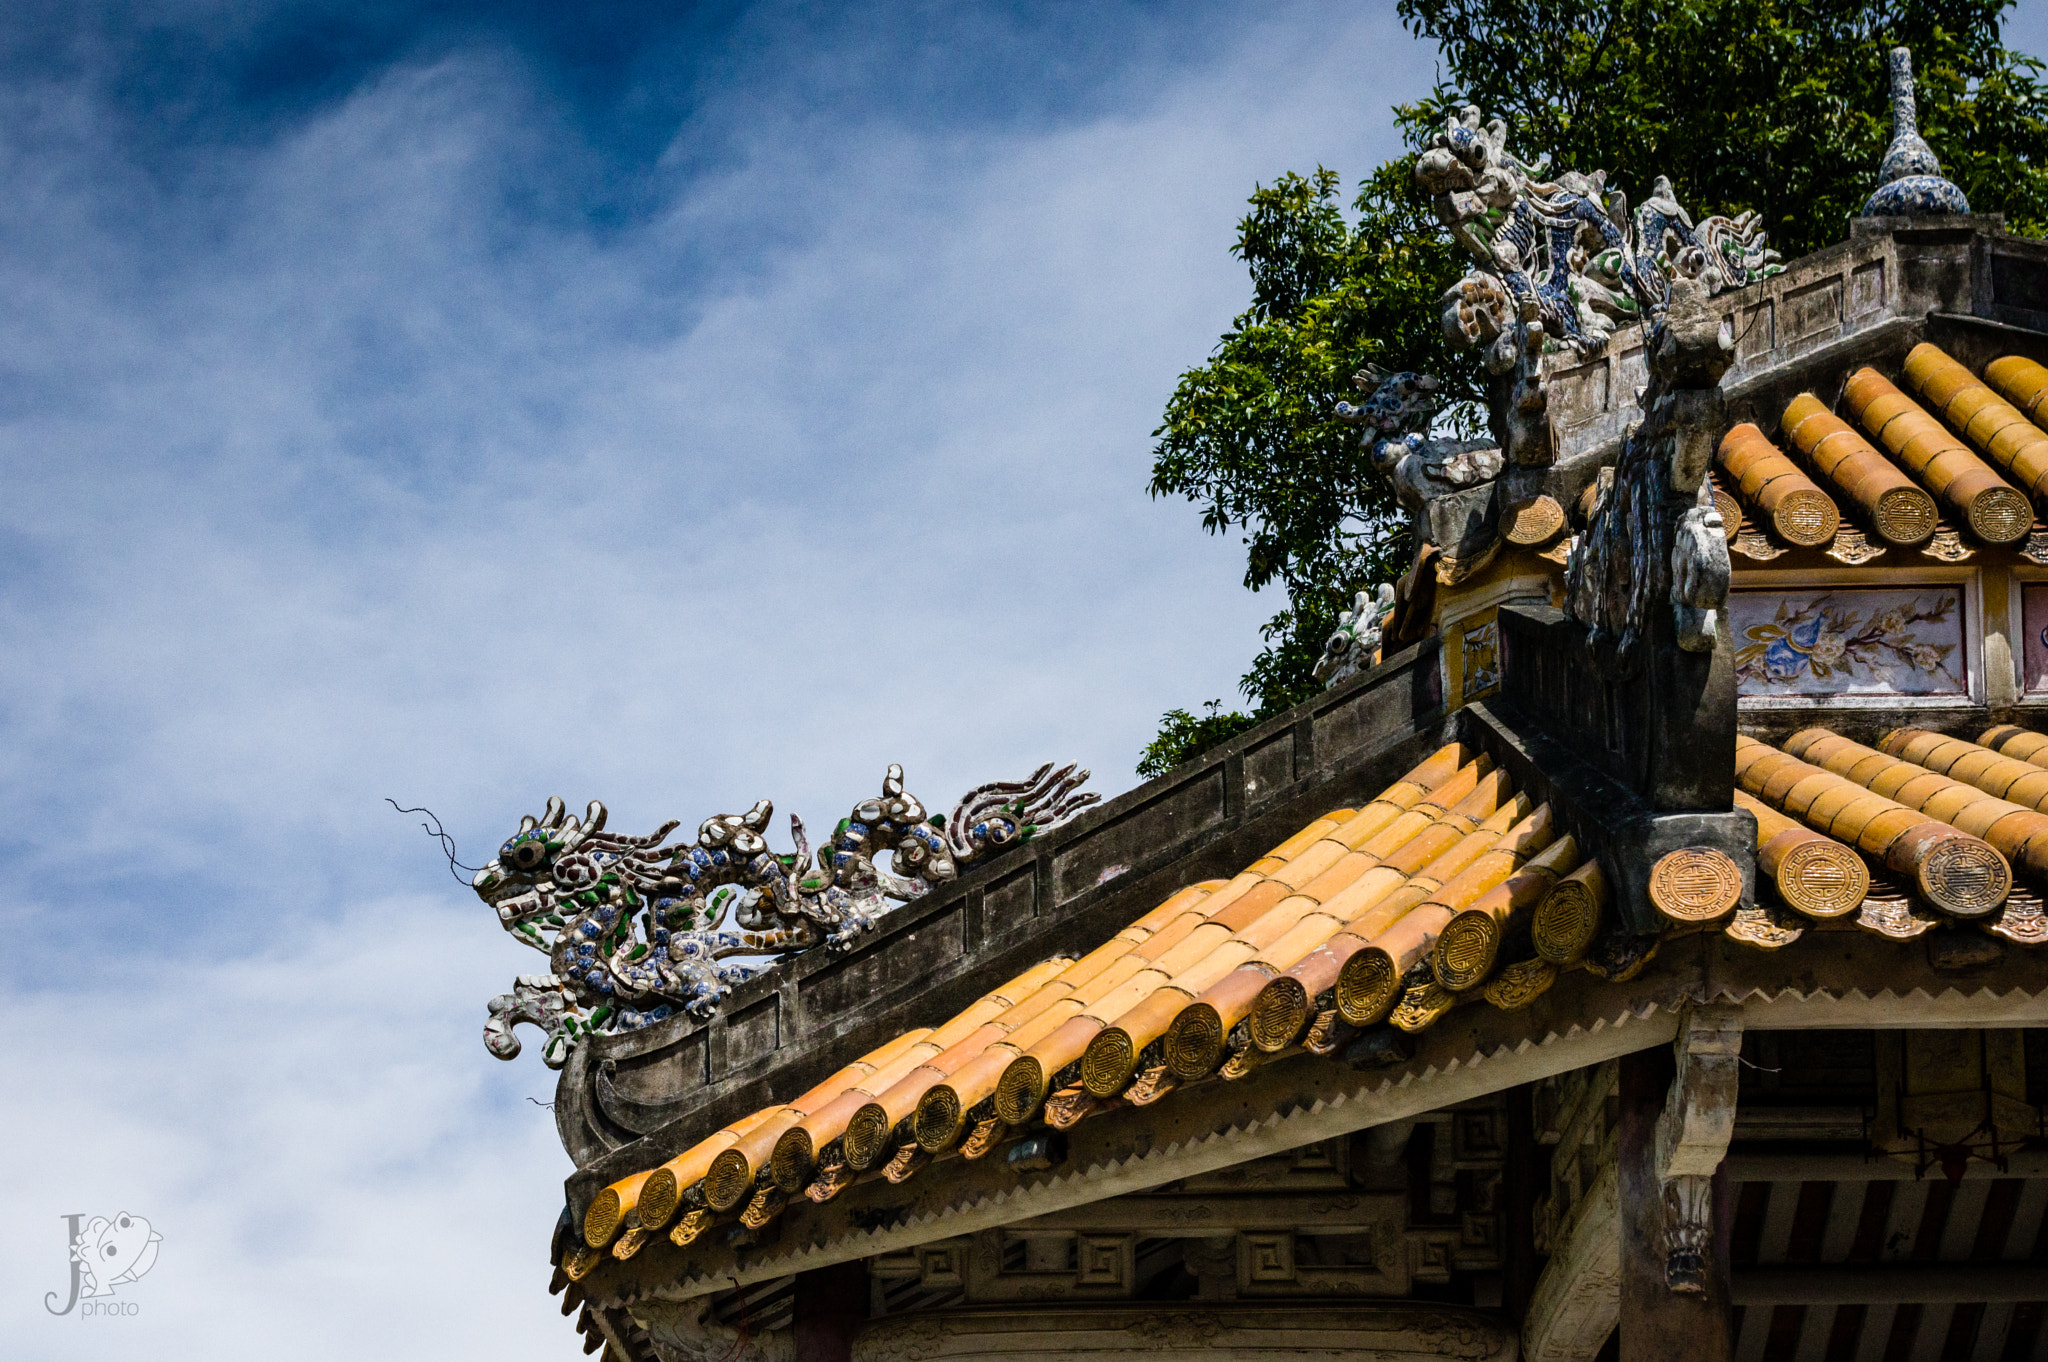 Pentax K-3 sample photo. Dragons sur les toits des maisons des mandarins photography